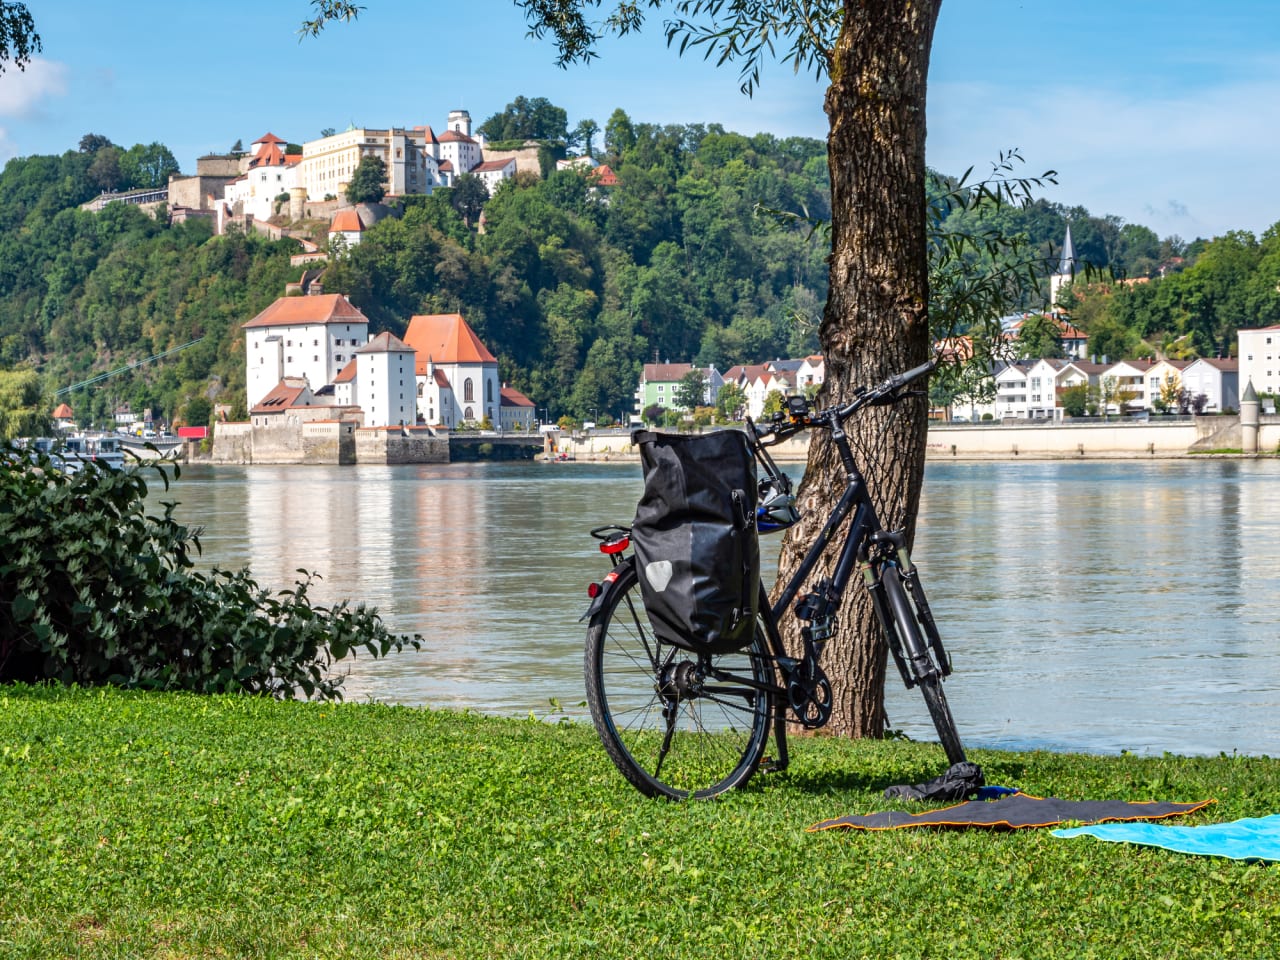 Fahrrad an der Donau, Passau, Deutschland © Animaflora/iStock / Getty Images Plus via Getty Images